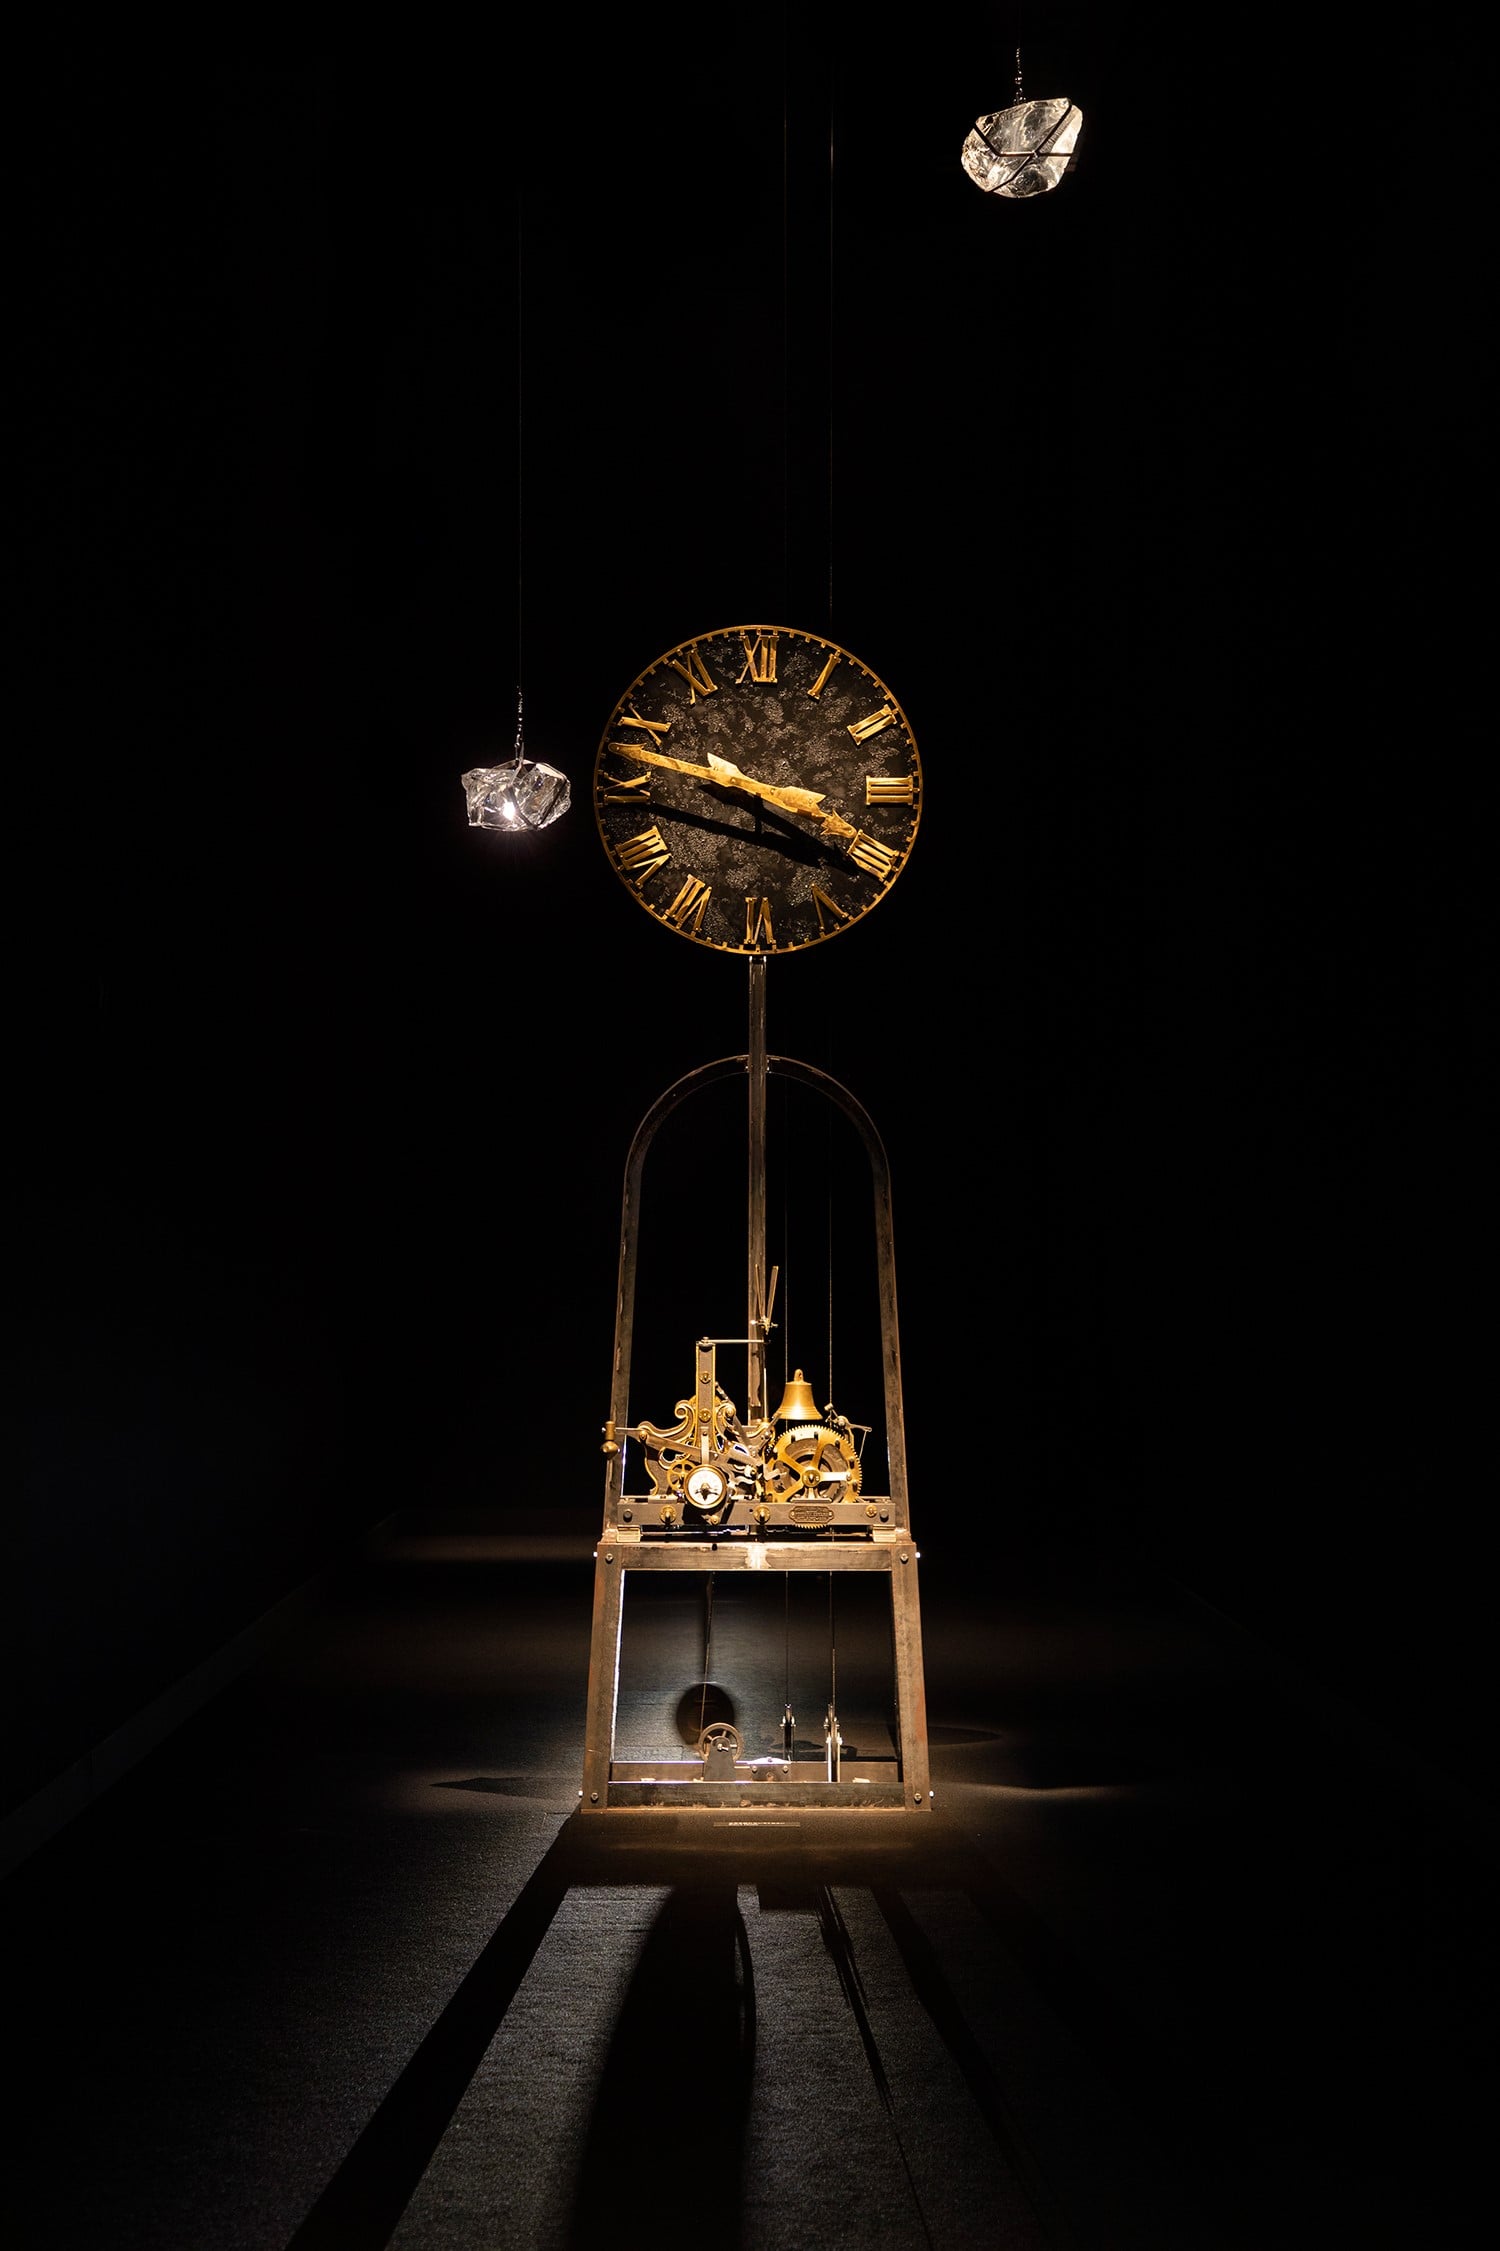 進入會場，首先看到的是杉本博司的「逆行時鐘」（2018年）。Backward Clock, Hiroshi Sugimoto, 2018 [Made in Milan] © Hiroshi Sugimoto/Courtesy of N.M.R.L.進入會場，首先看到的是杉本博司的「逆行時鐘」。 2018年，綜合媒材（1908年製造的古董時鐘經由作者修復改為逆行［製造：Fontana Cesare，米蘭］），個人收藏品